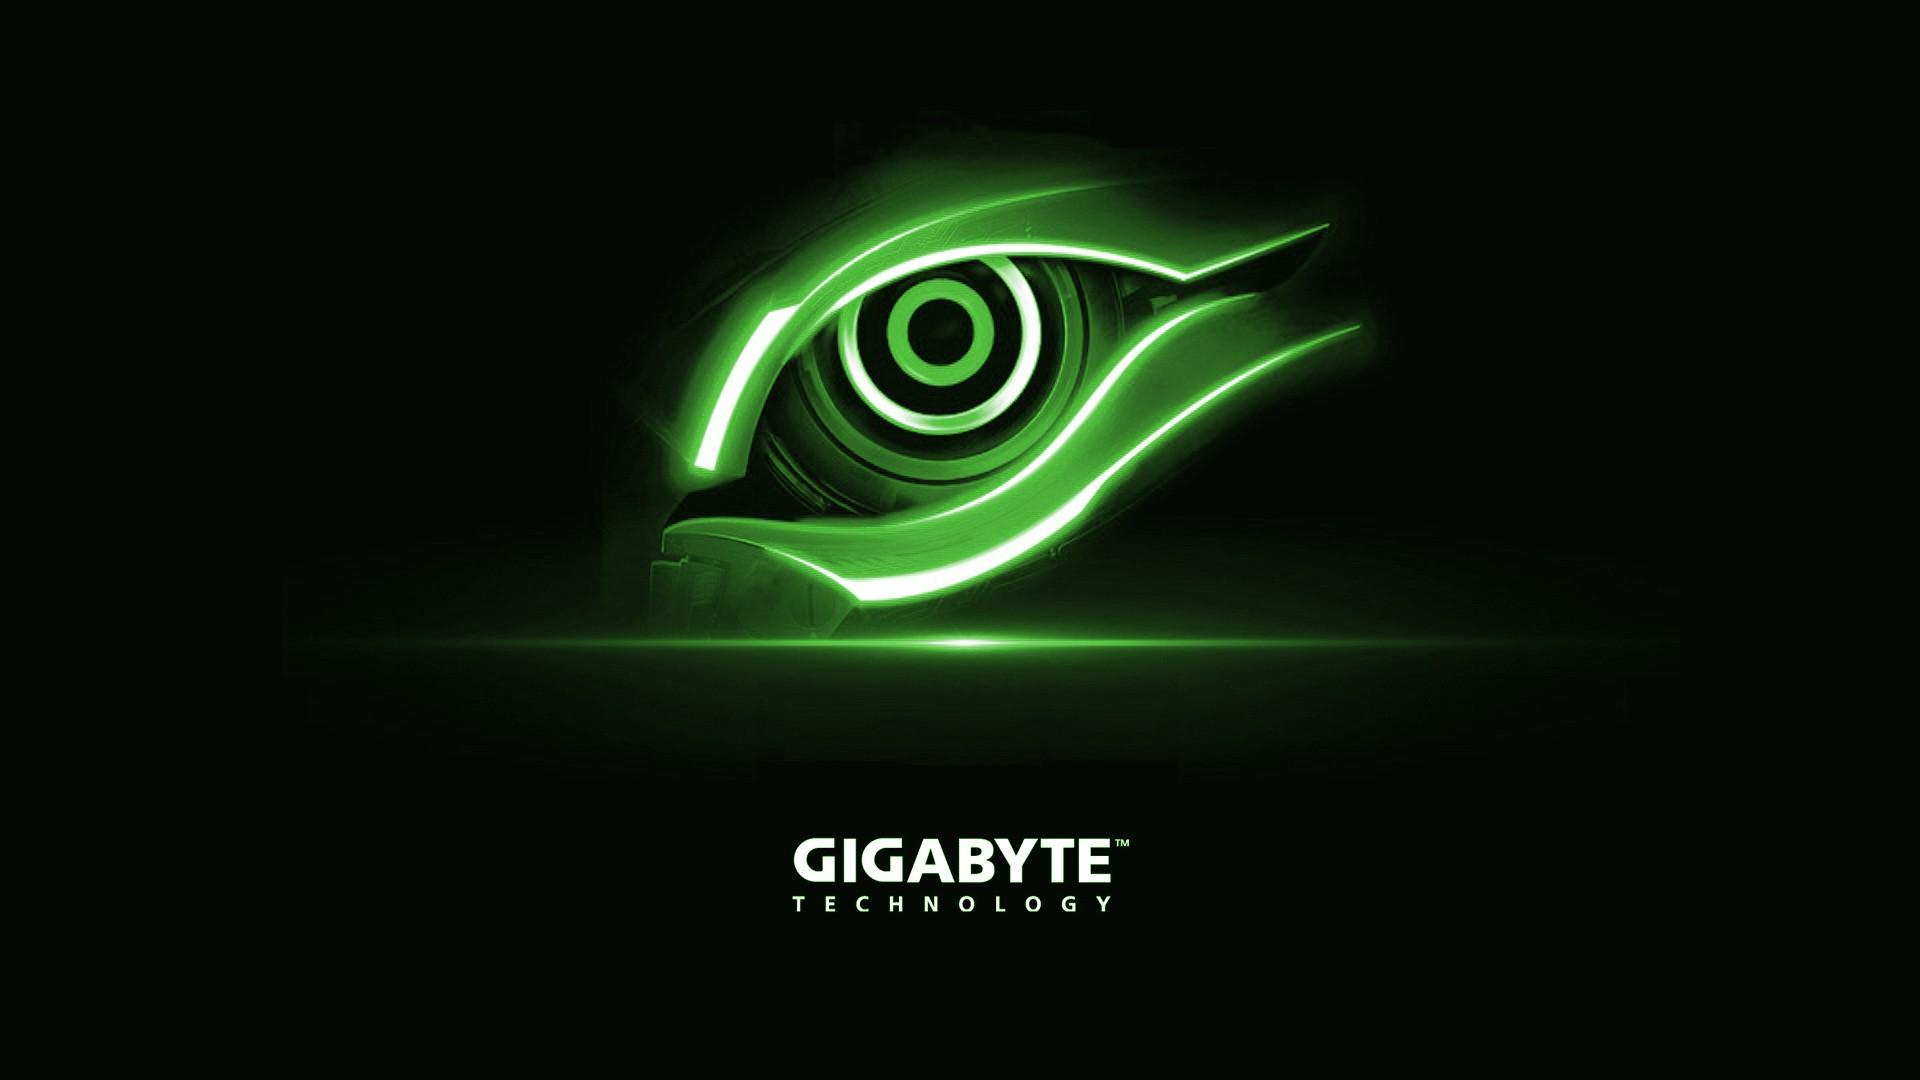 Gigabyte Technology Green Eye Logo Wallpaper free desktop